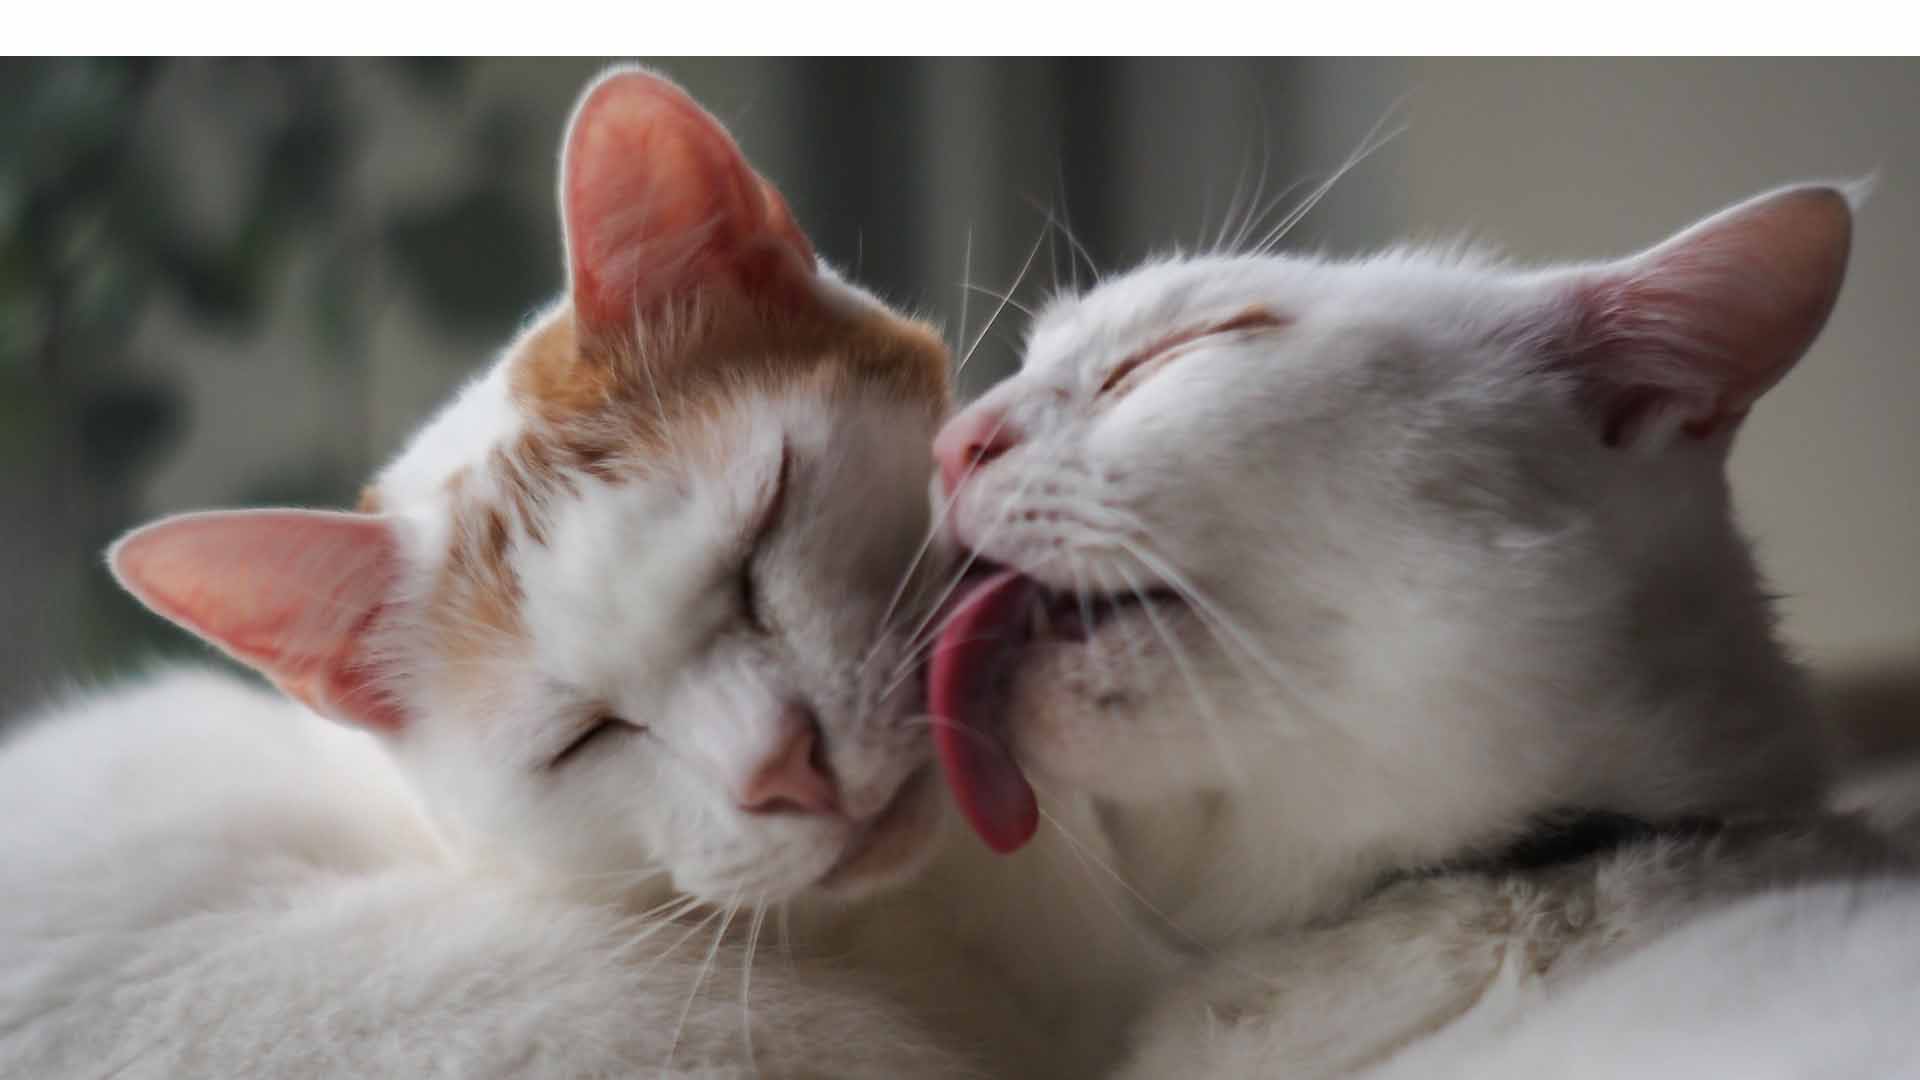 Crean lengua de silicón, tamaño real, que permite a los dueños lamer a sus gatos para entablar un vínculo afectivo